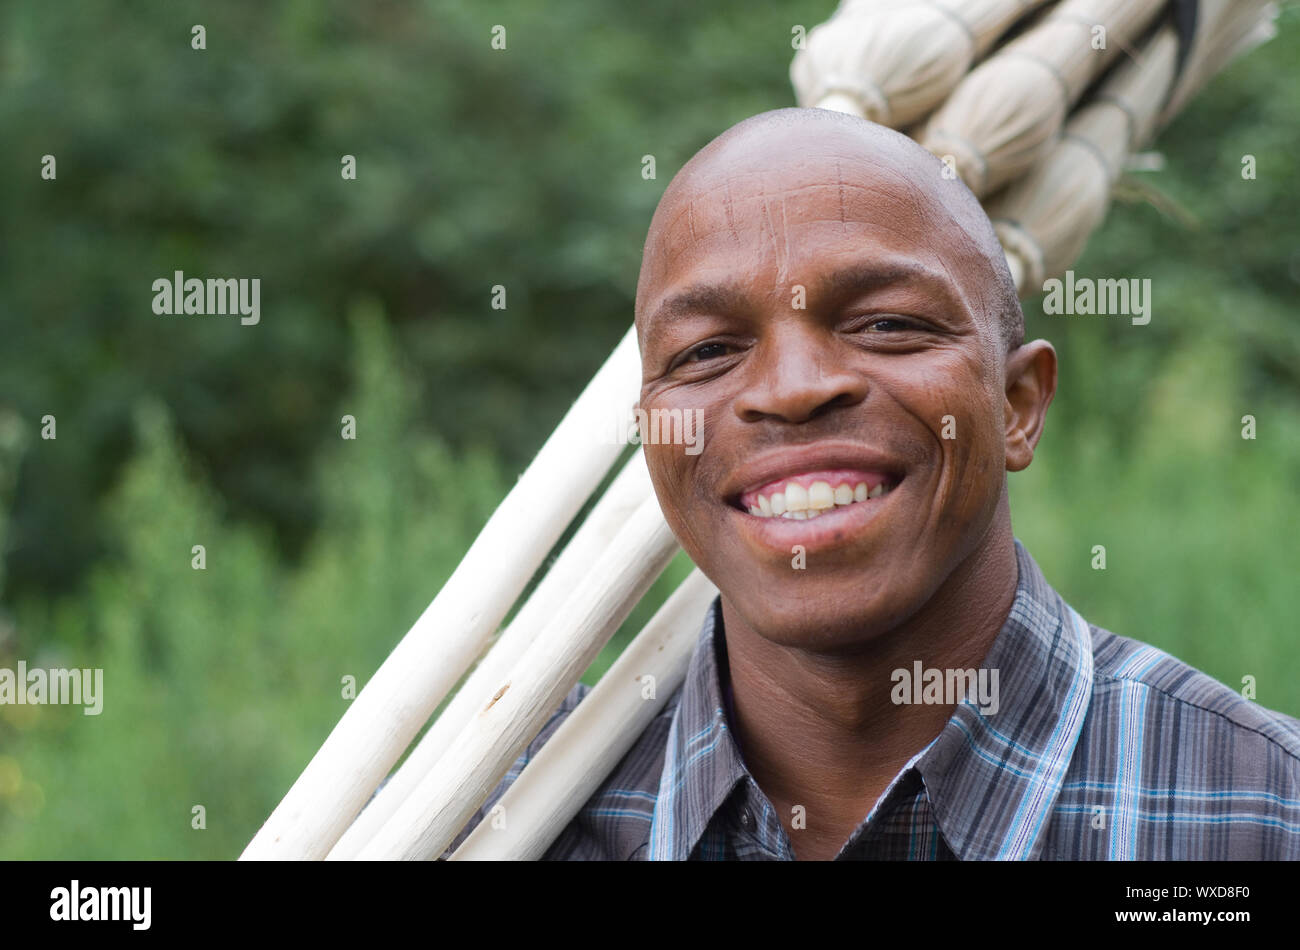 Stock Foto von einem lächelnden Schwarze südafrikanische Unternehmer Small Business Besen Verkäufer Stockfoto